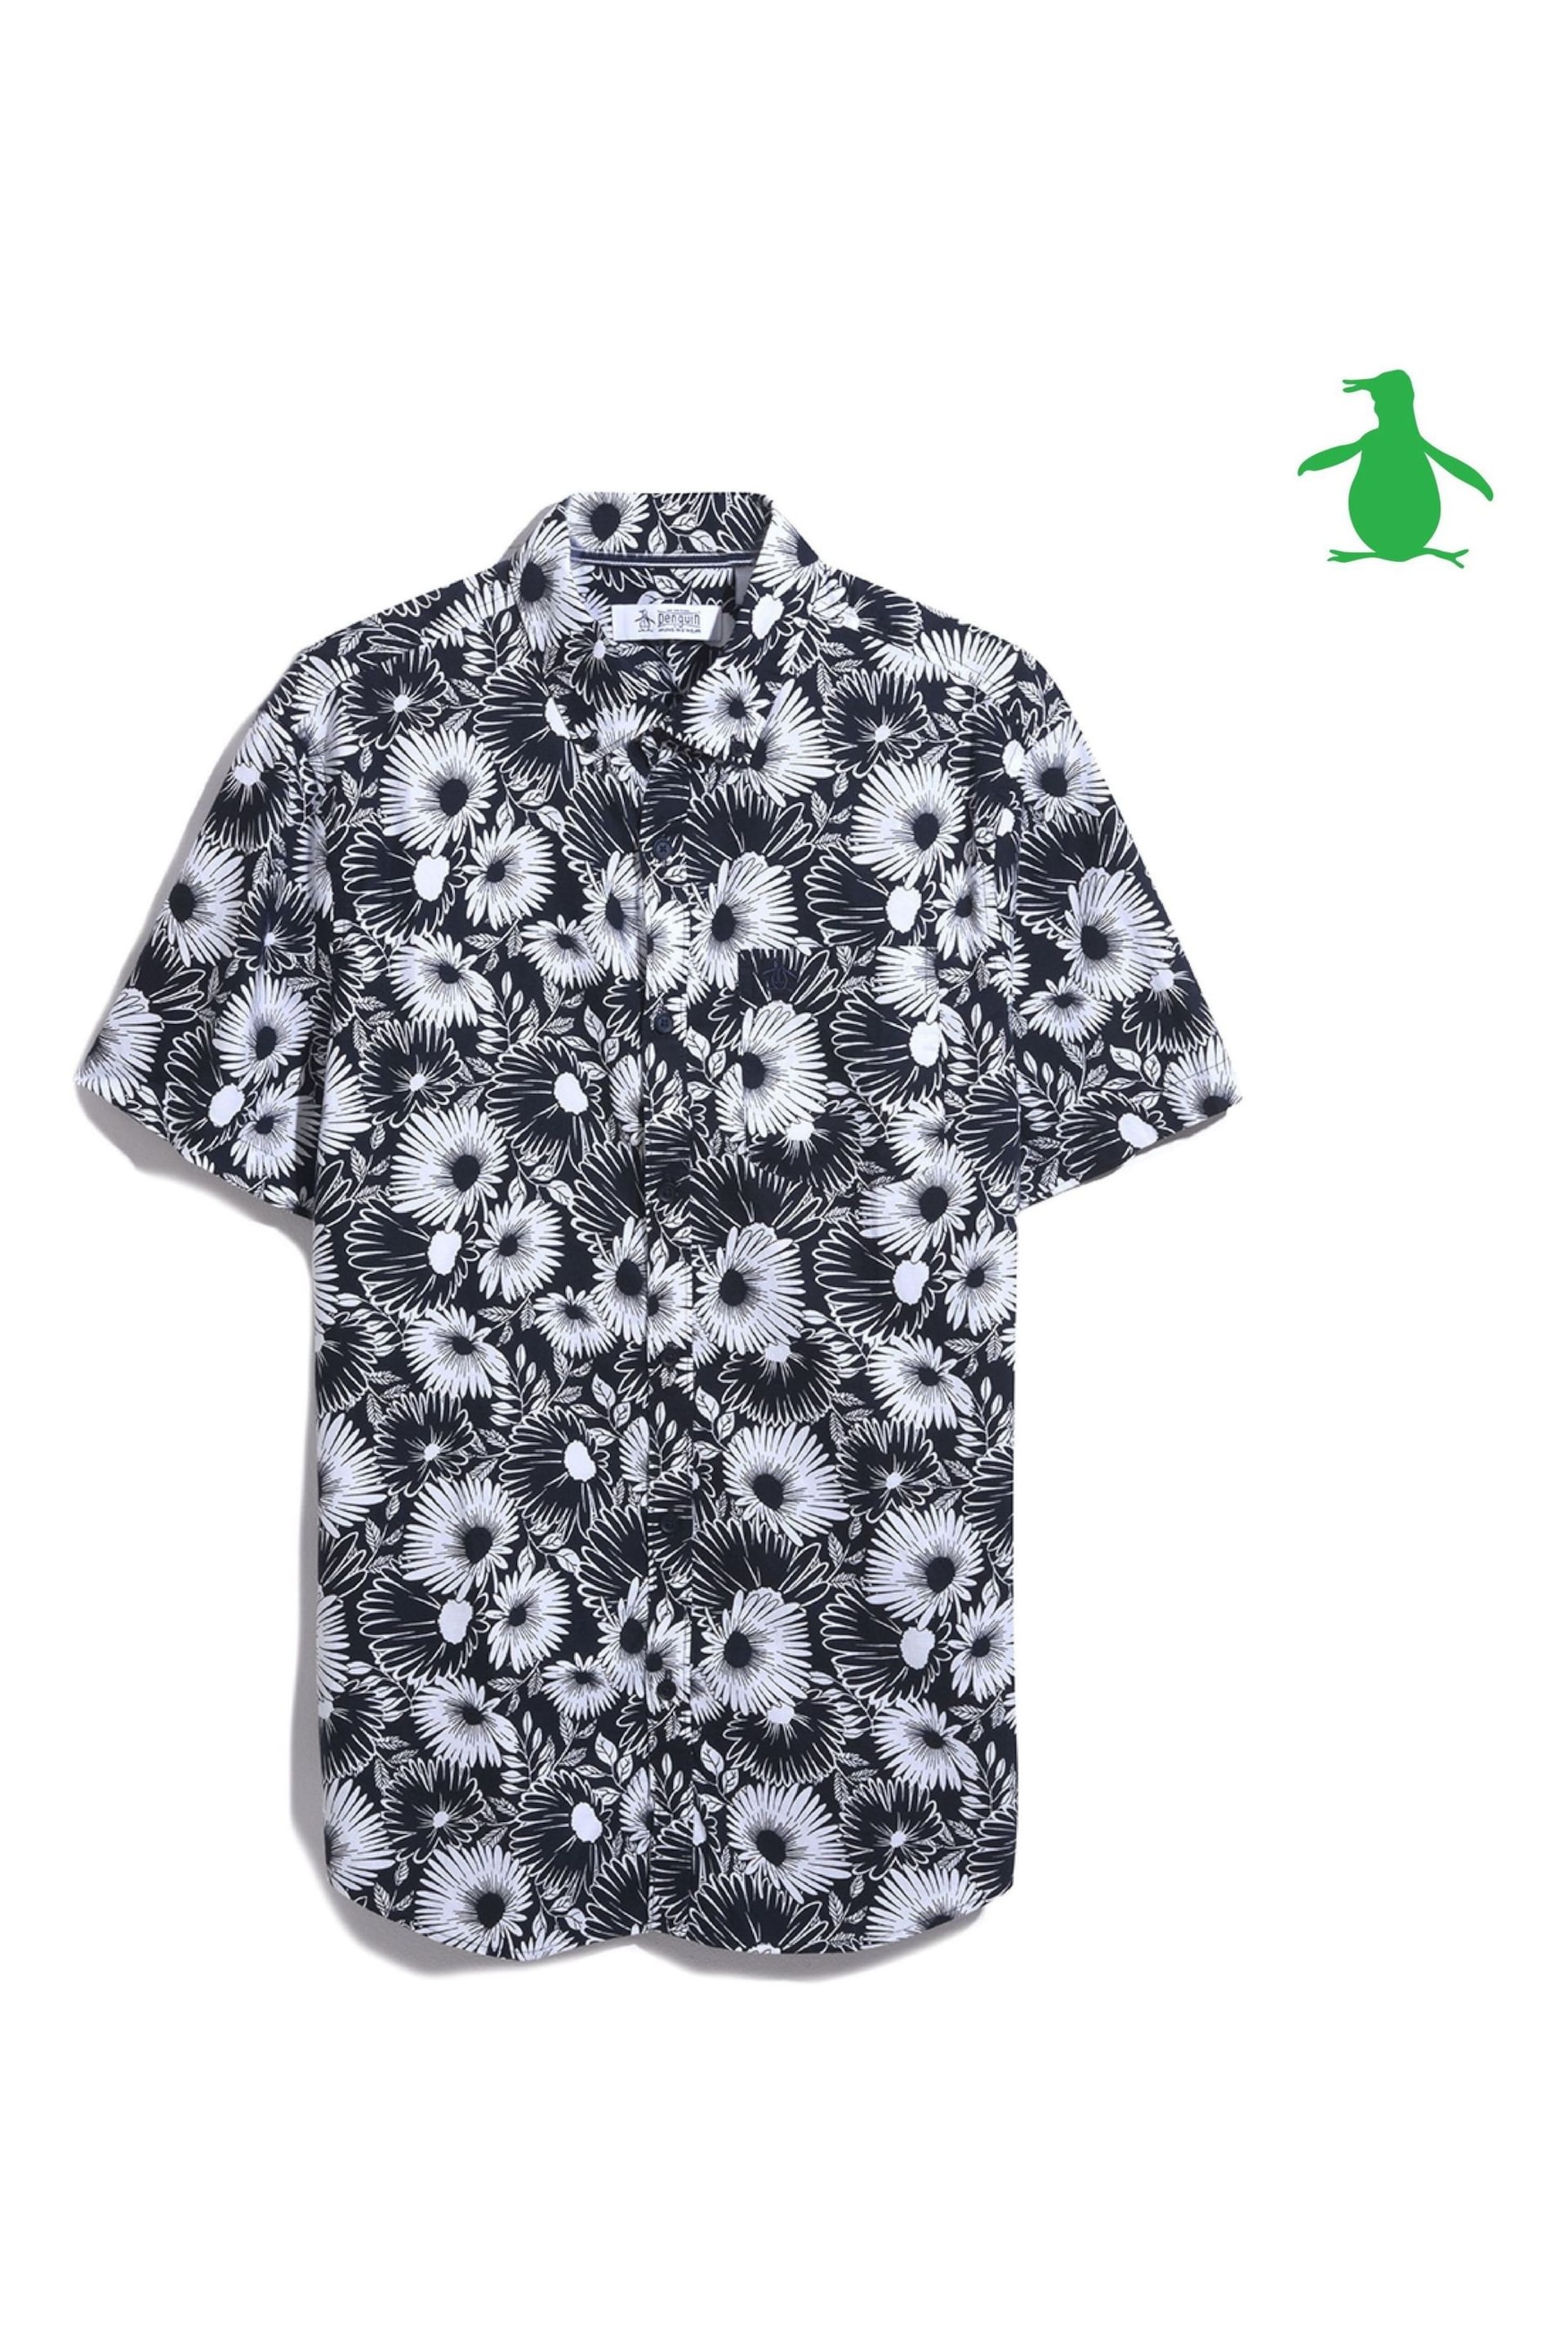 Original Penguin All-Over Floral Print Cotton Blend Short Sleeve Shirt - Image 4 of 4